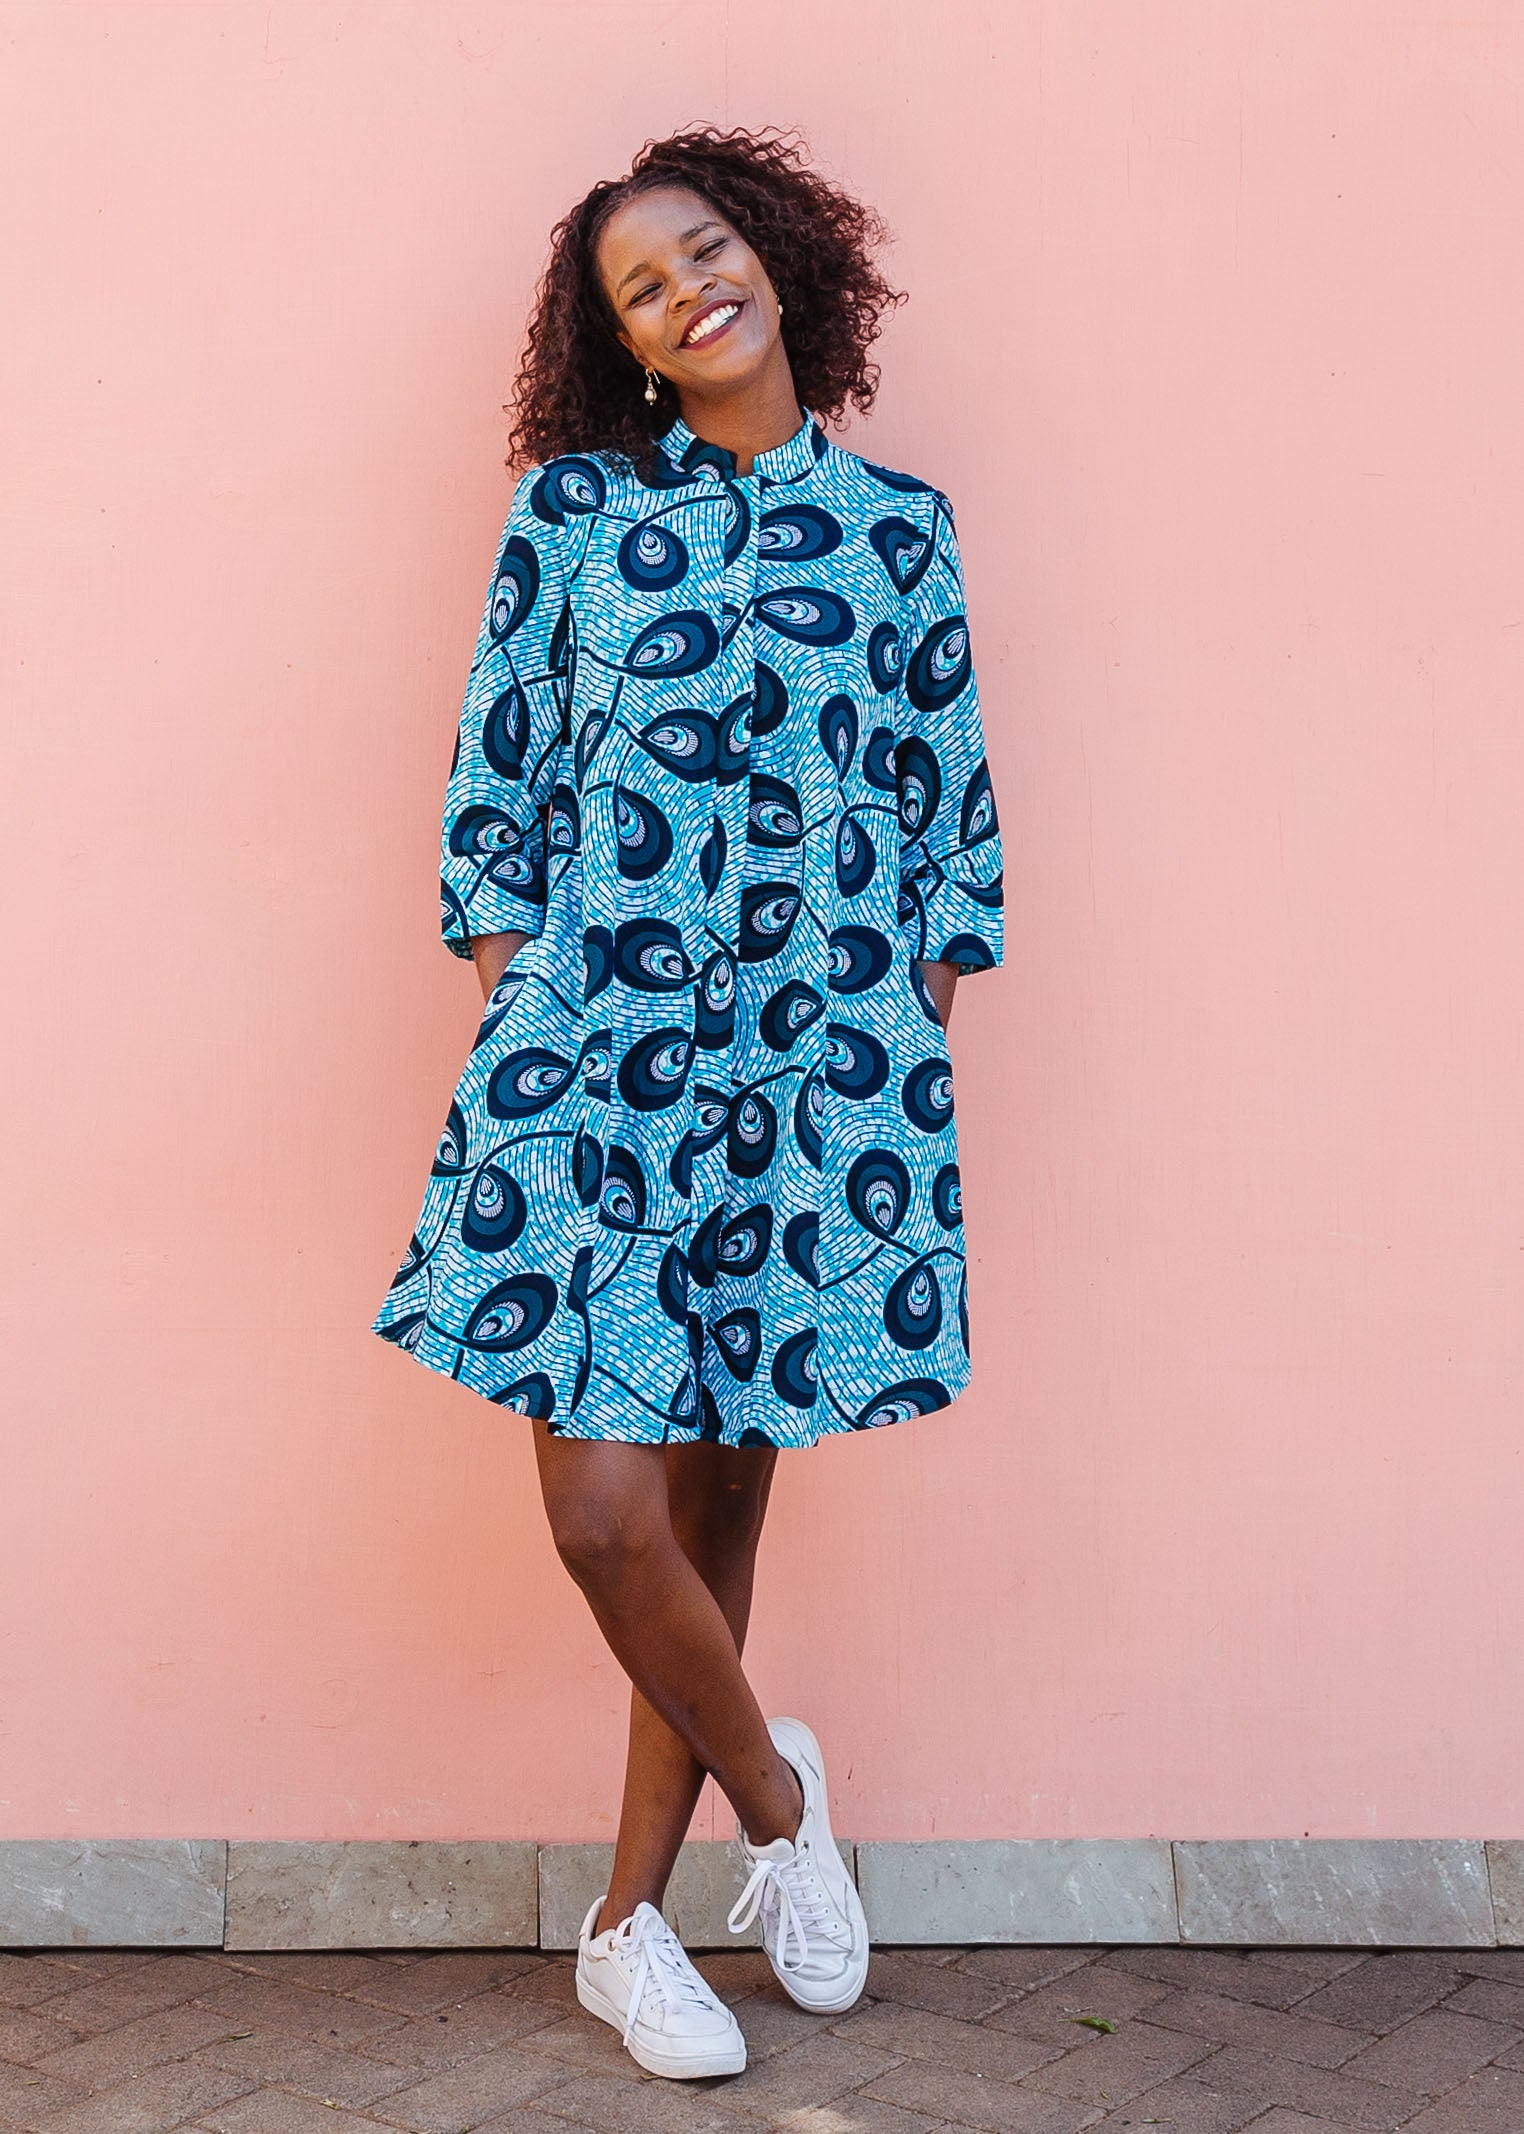 Model wearing blue dress with loop print.